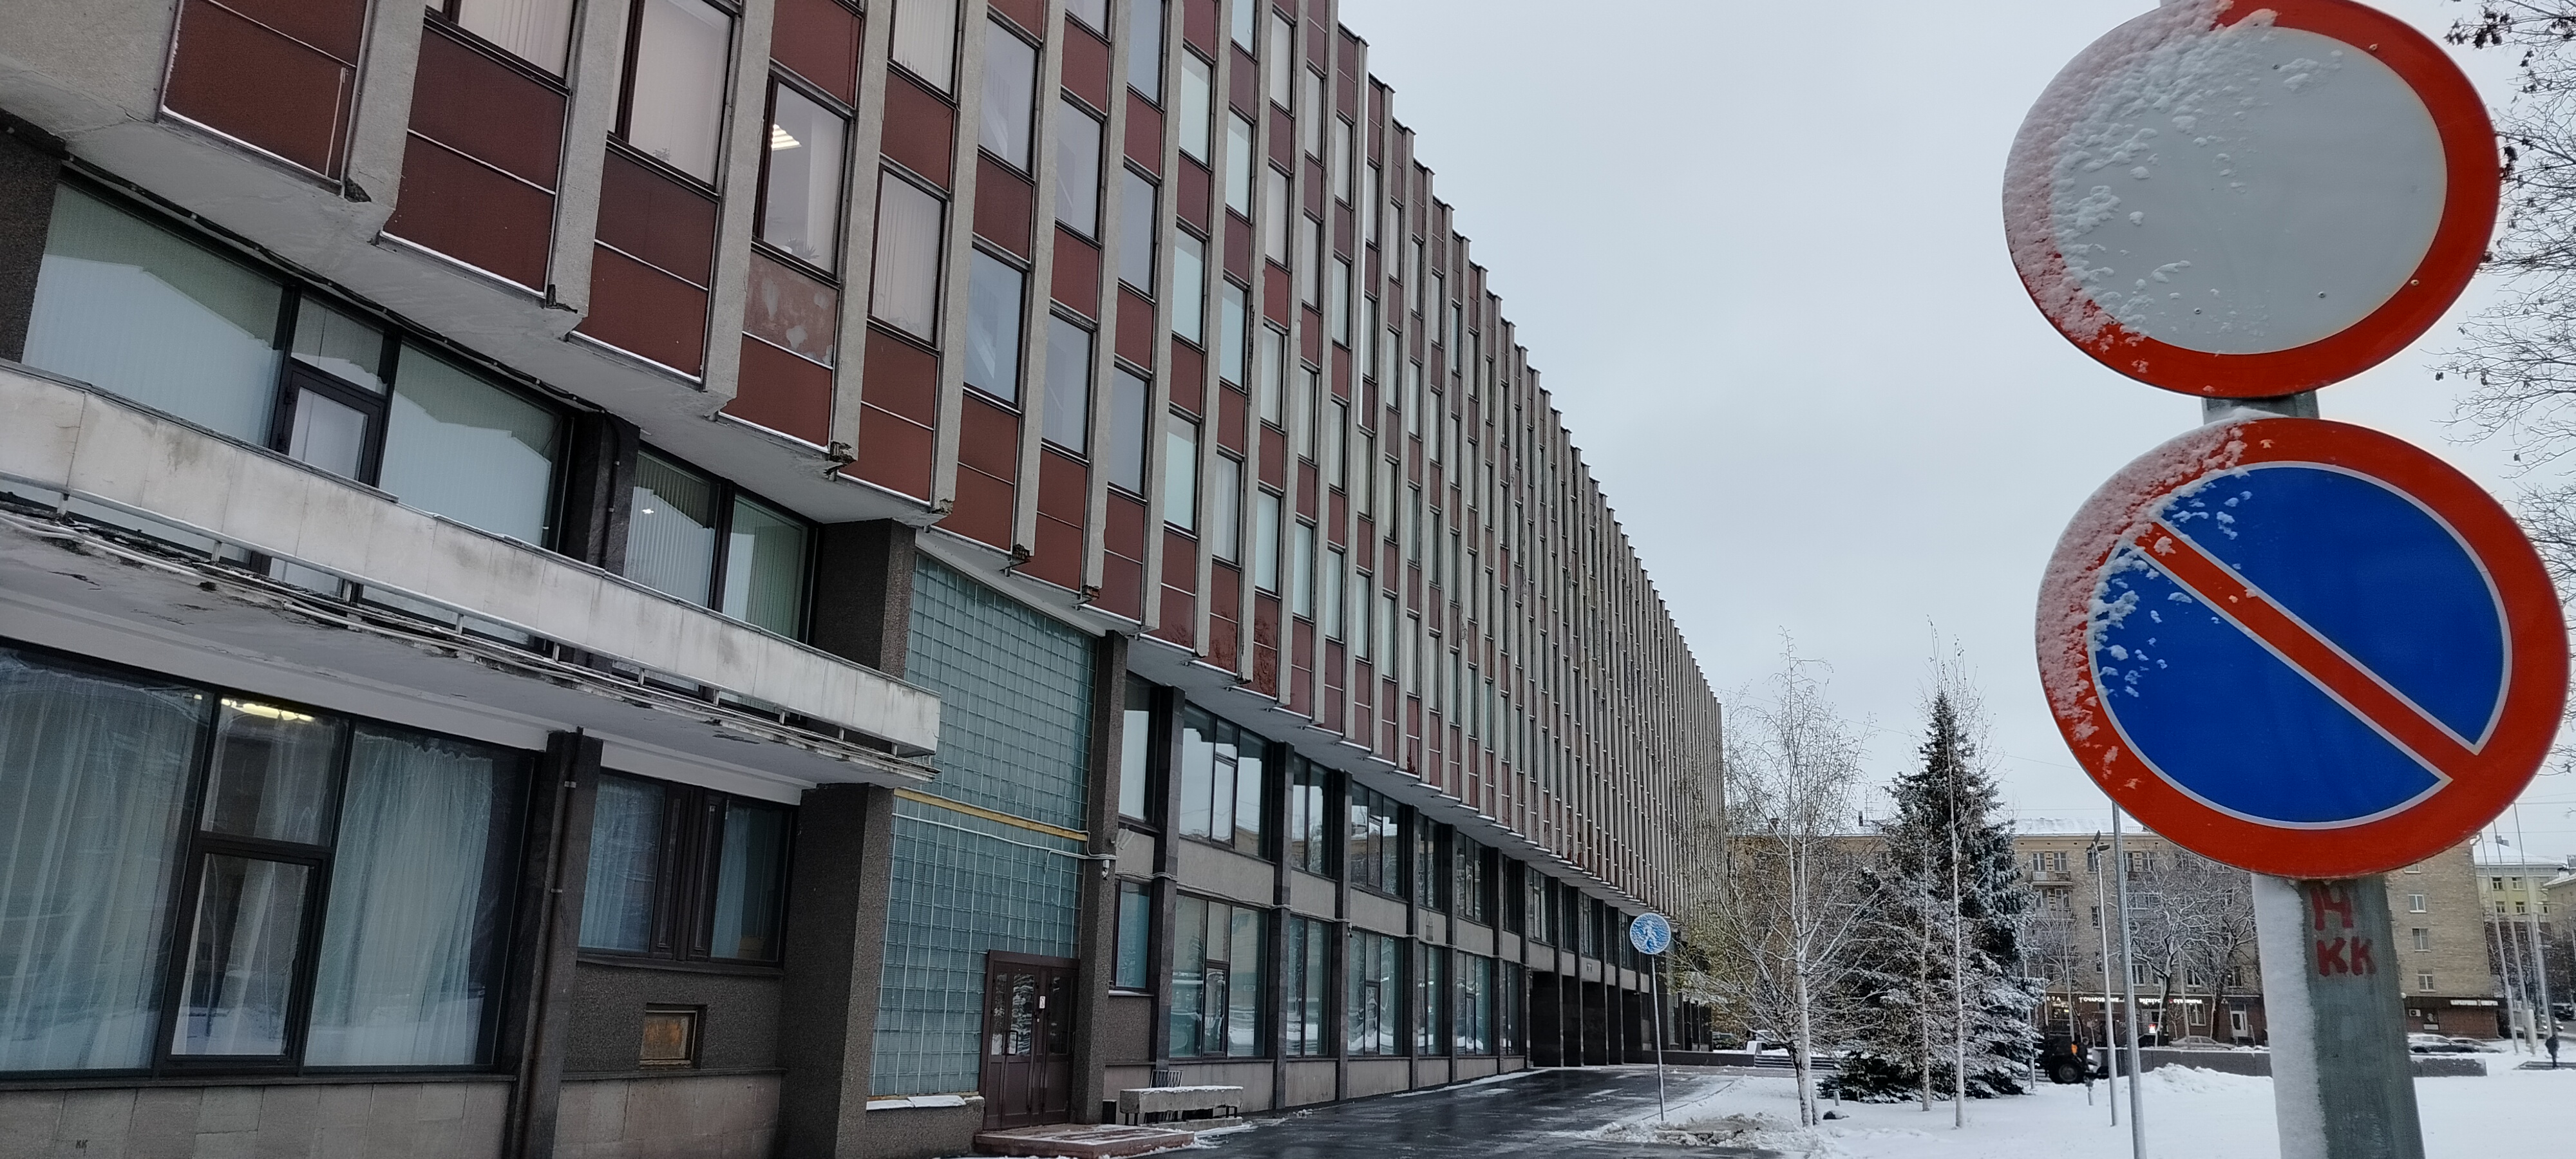 Власти Петрозаводска проверят одну из школ города после скандальной публикации